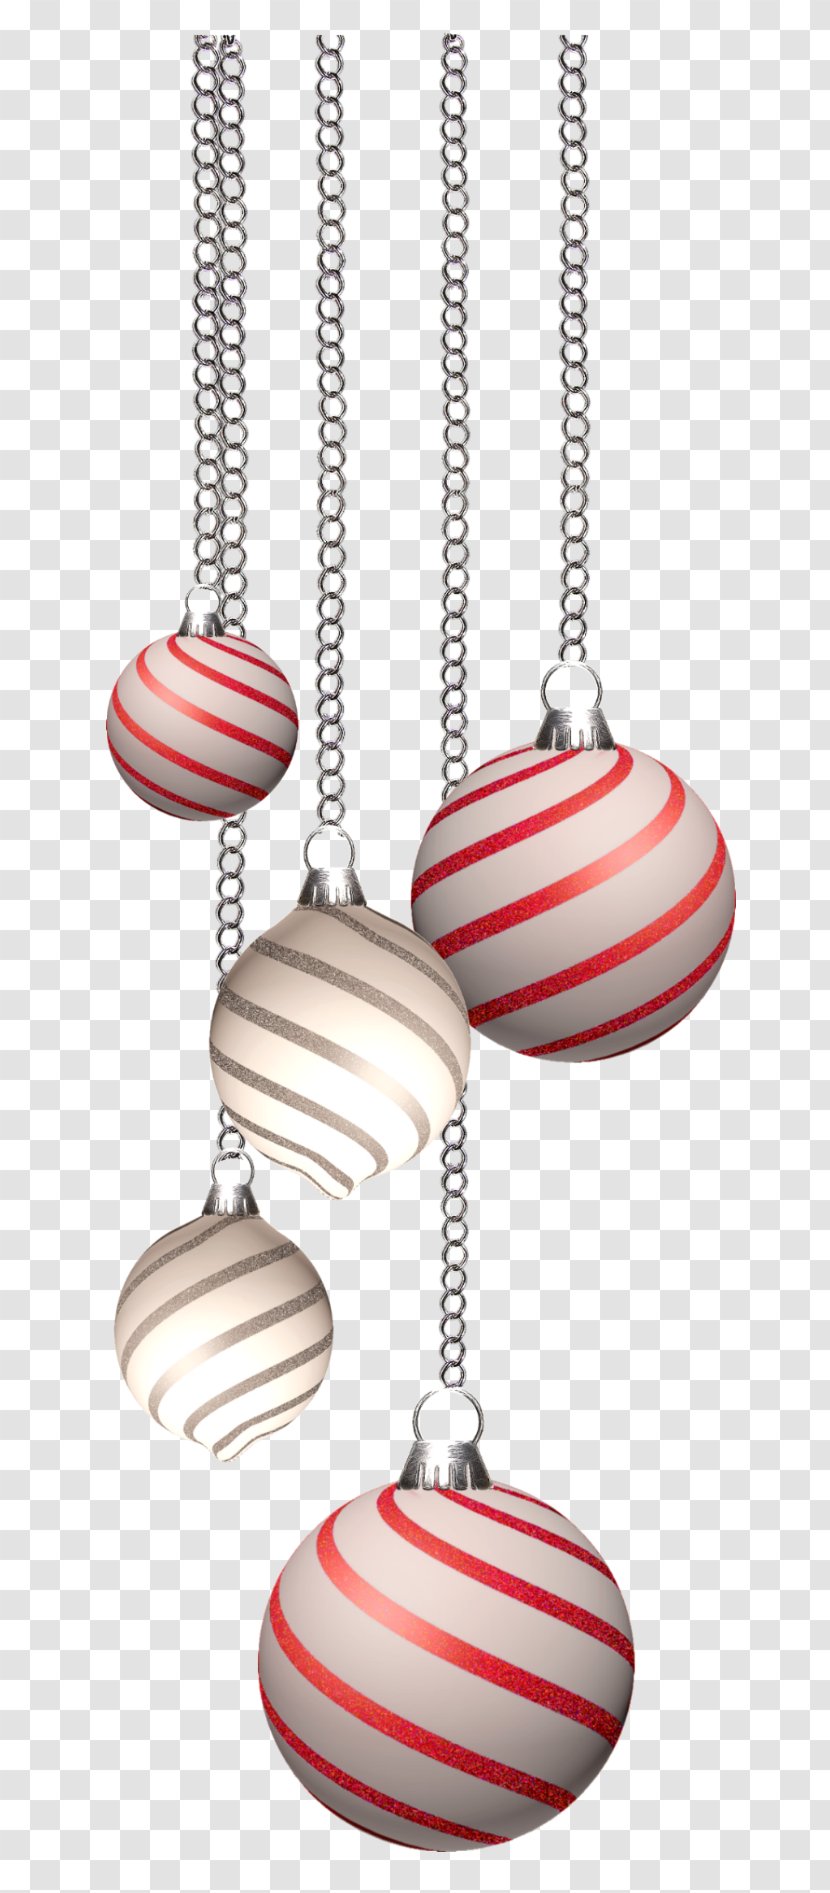 Christmas Computer Graphics - Holiday Ornament - Bonbones Transparent PNG